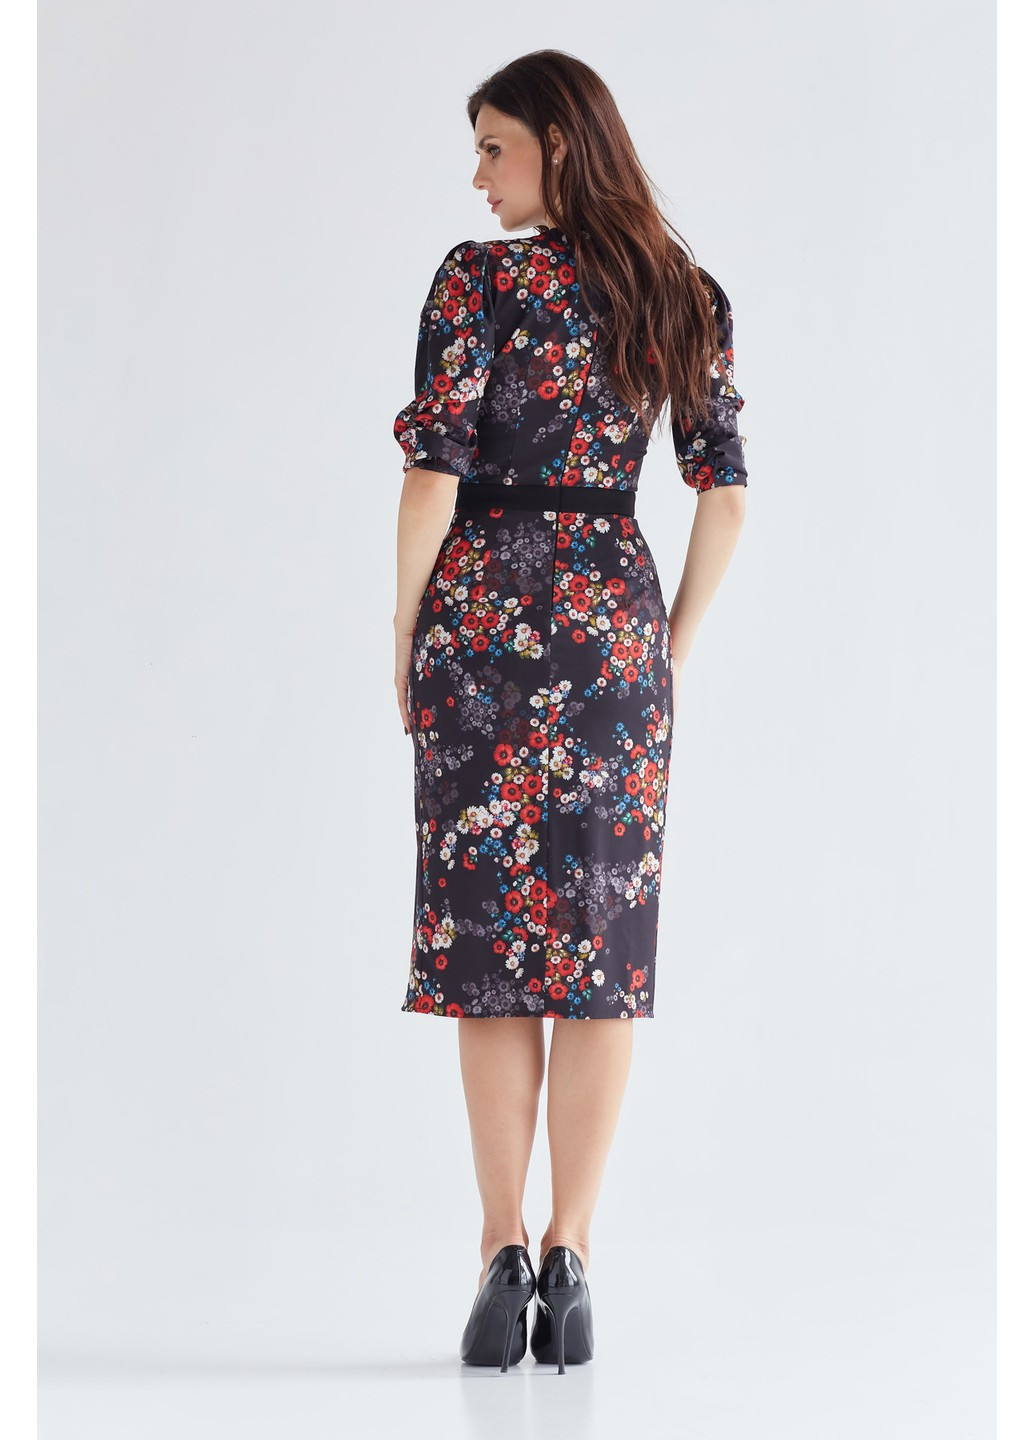 Комбинированное деловое платье карен футляр BYURSE с цветочным принтом